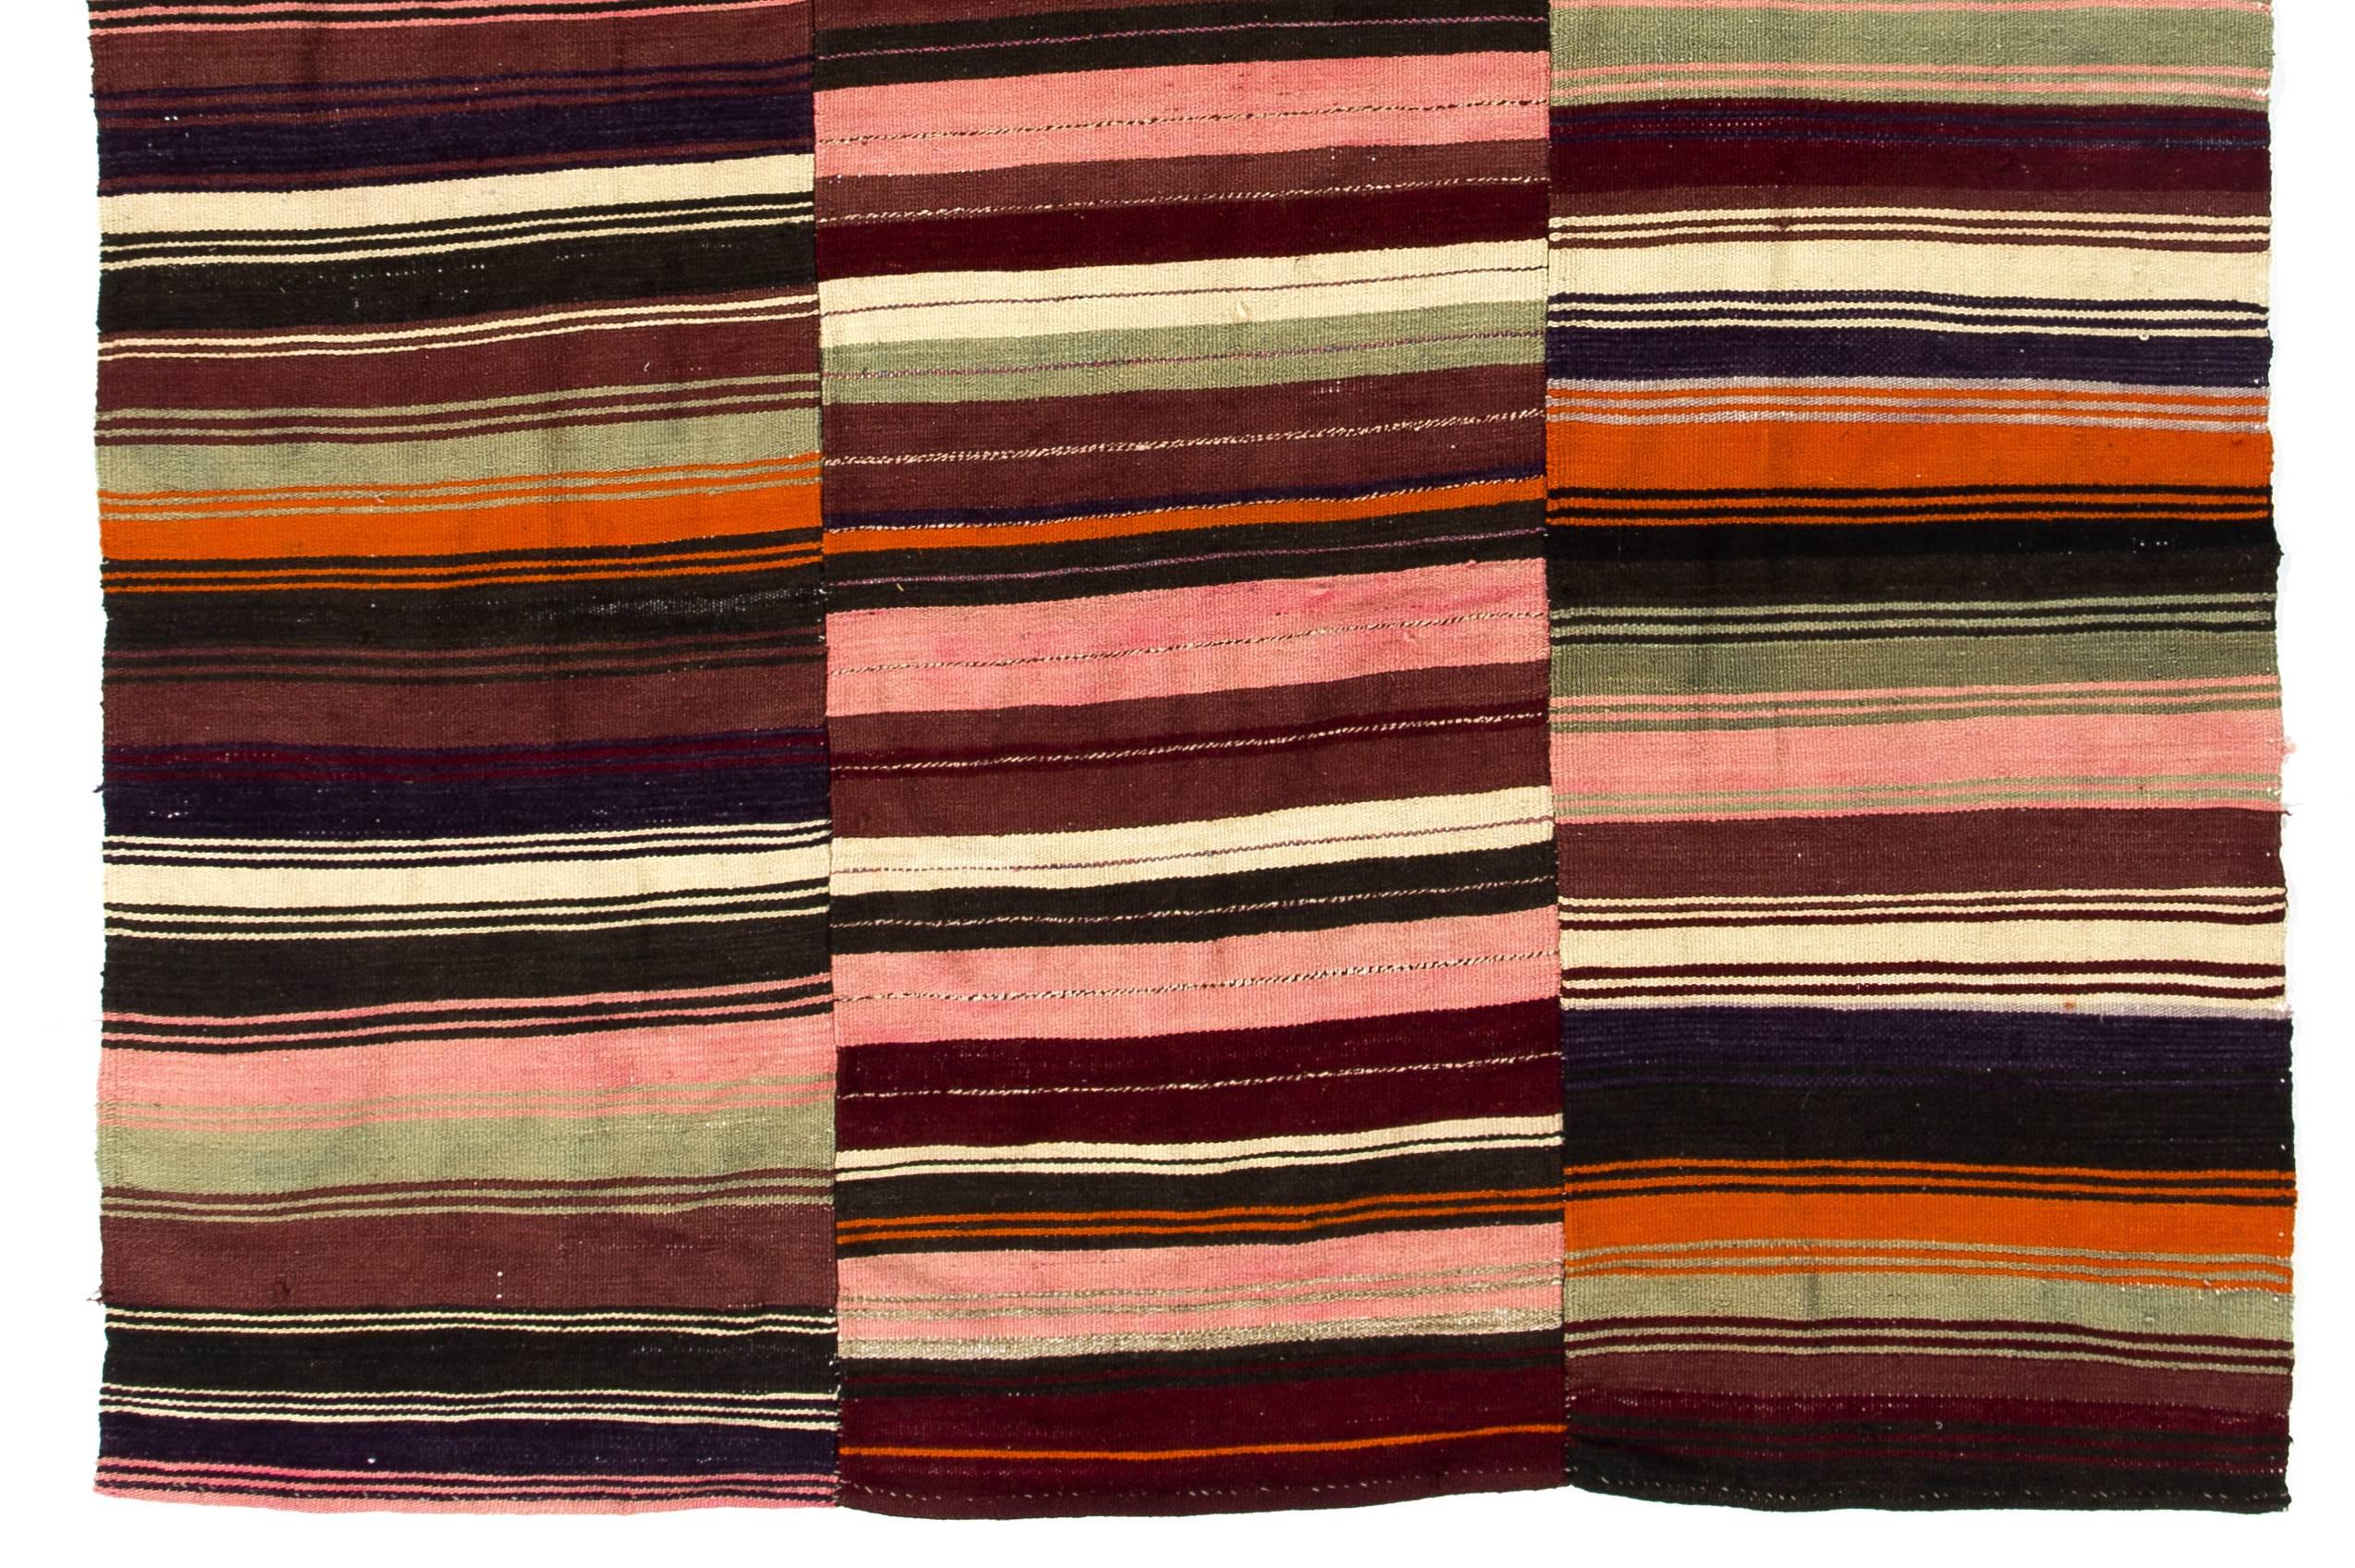 Questo elegante e colorato tappeto kilim vintage è stato tessuto a mano in tre pannelli. È realizzato in cotone e lana, ben miscelati per creare un pavimento fine e robusto. Presenta un design a righe semplice e minimalista con una splendida palette